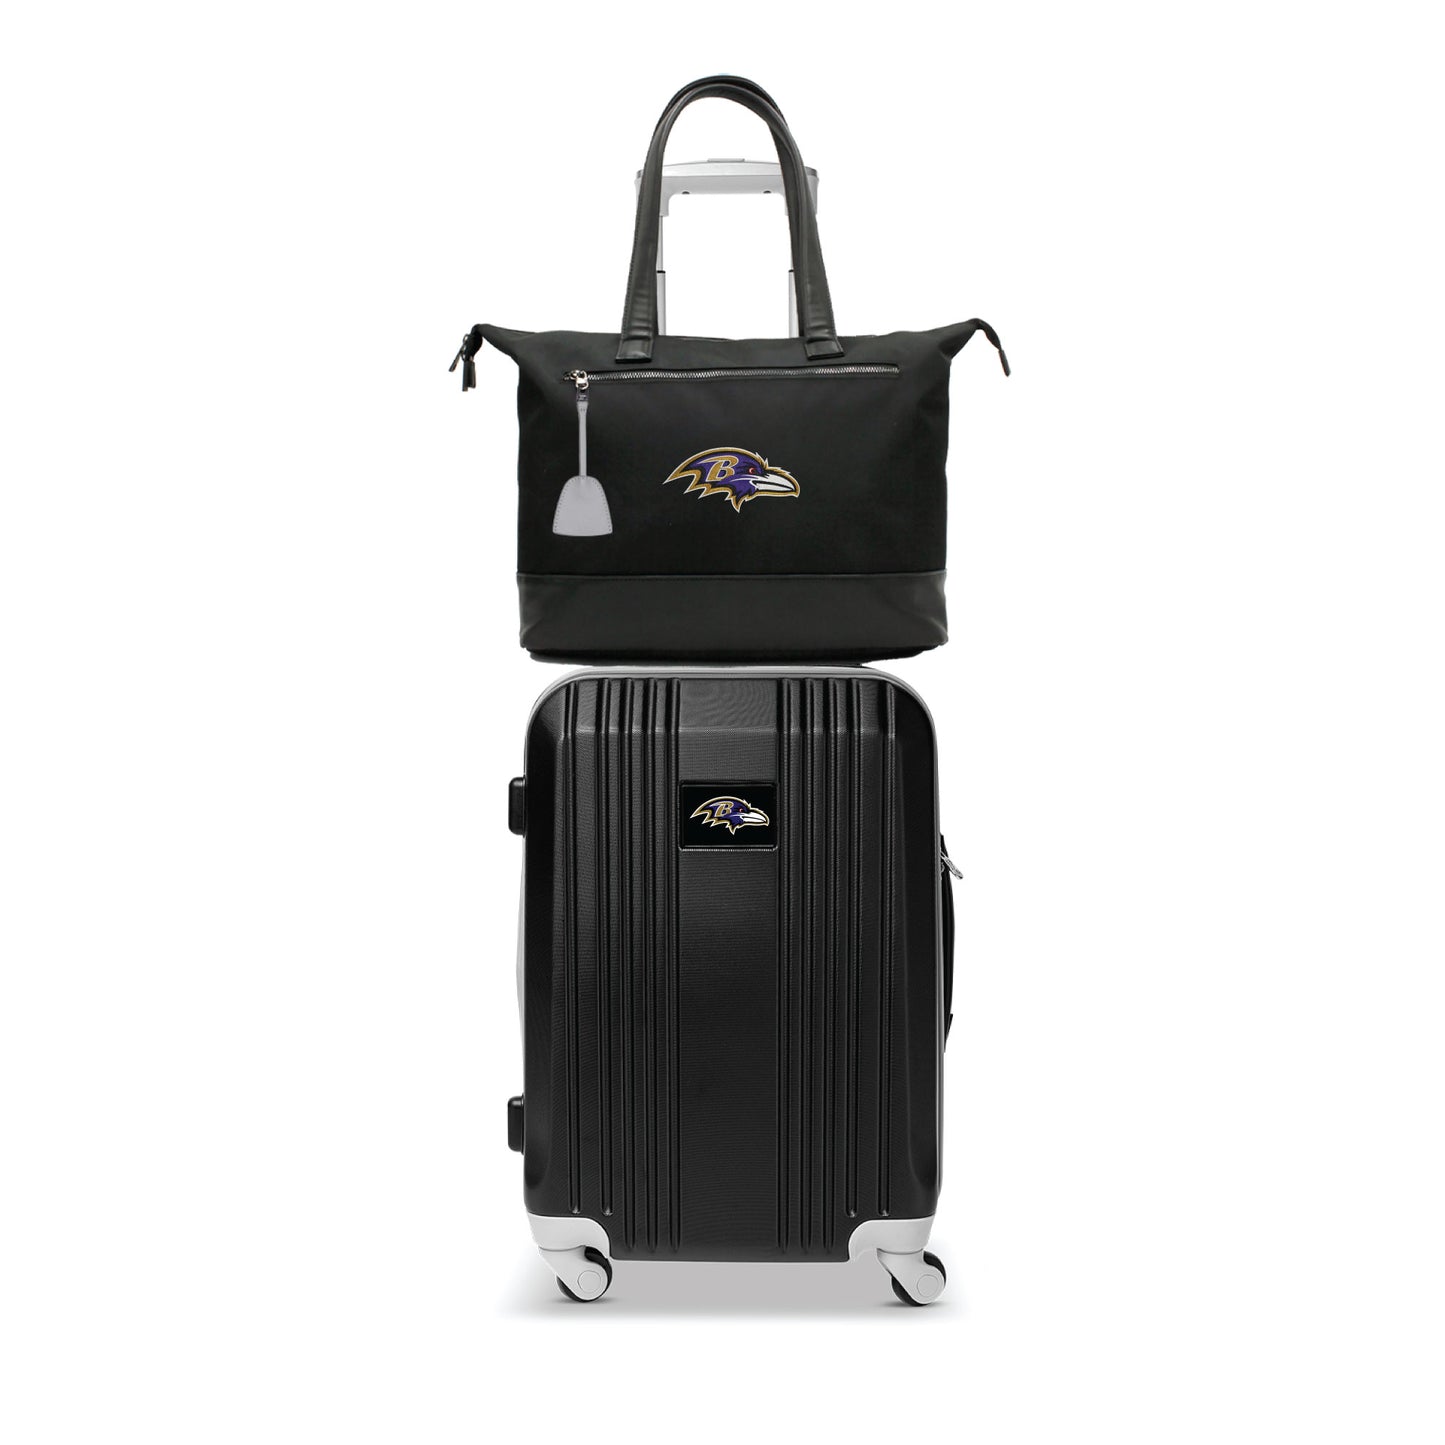 Baltimore Ravens Premium Laptop Tote Bag and Luggage Set